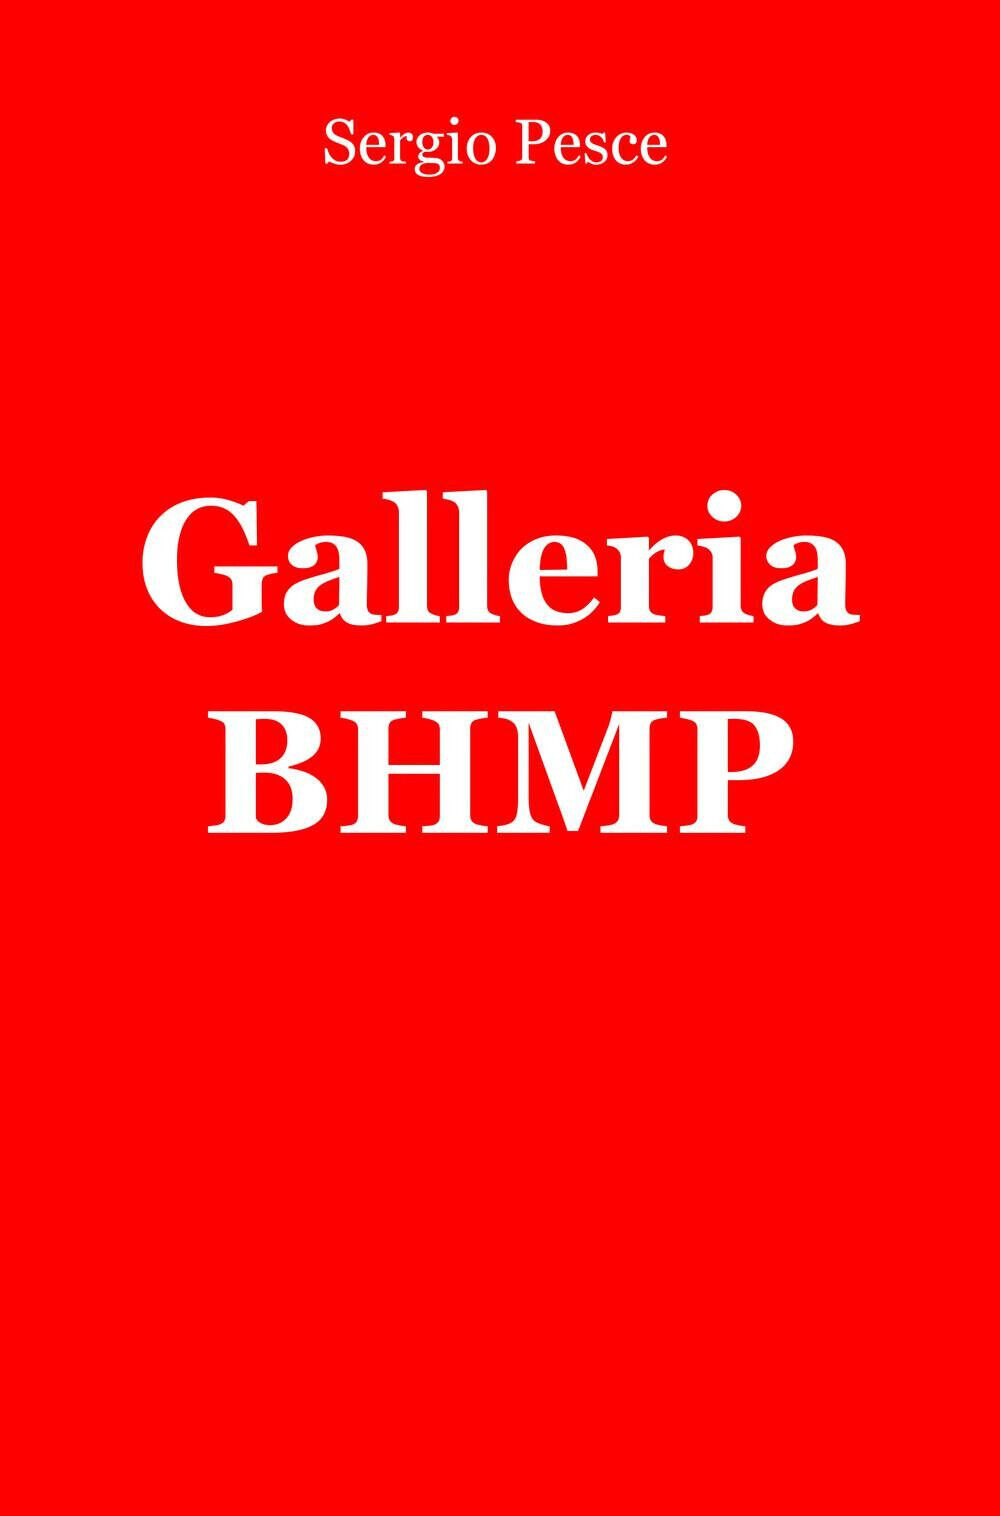 Galleria BHMP - Sergio Pesce - ilmiolibro, 2015